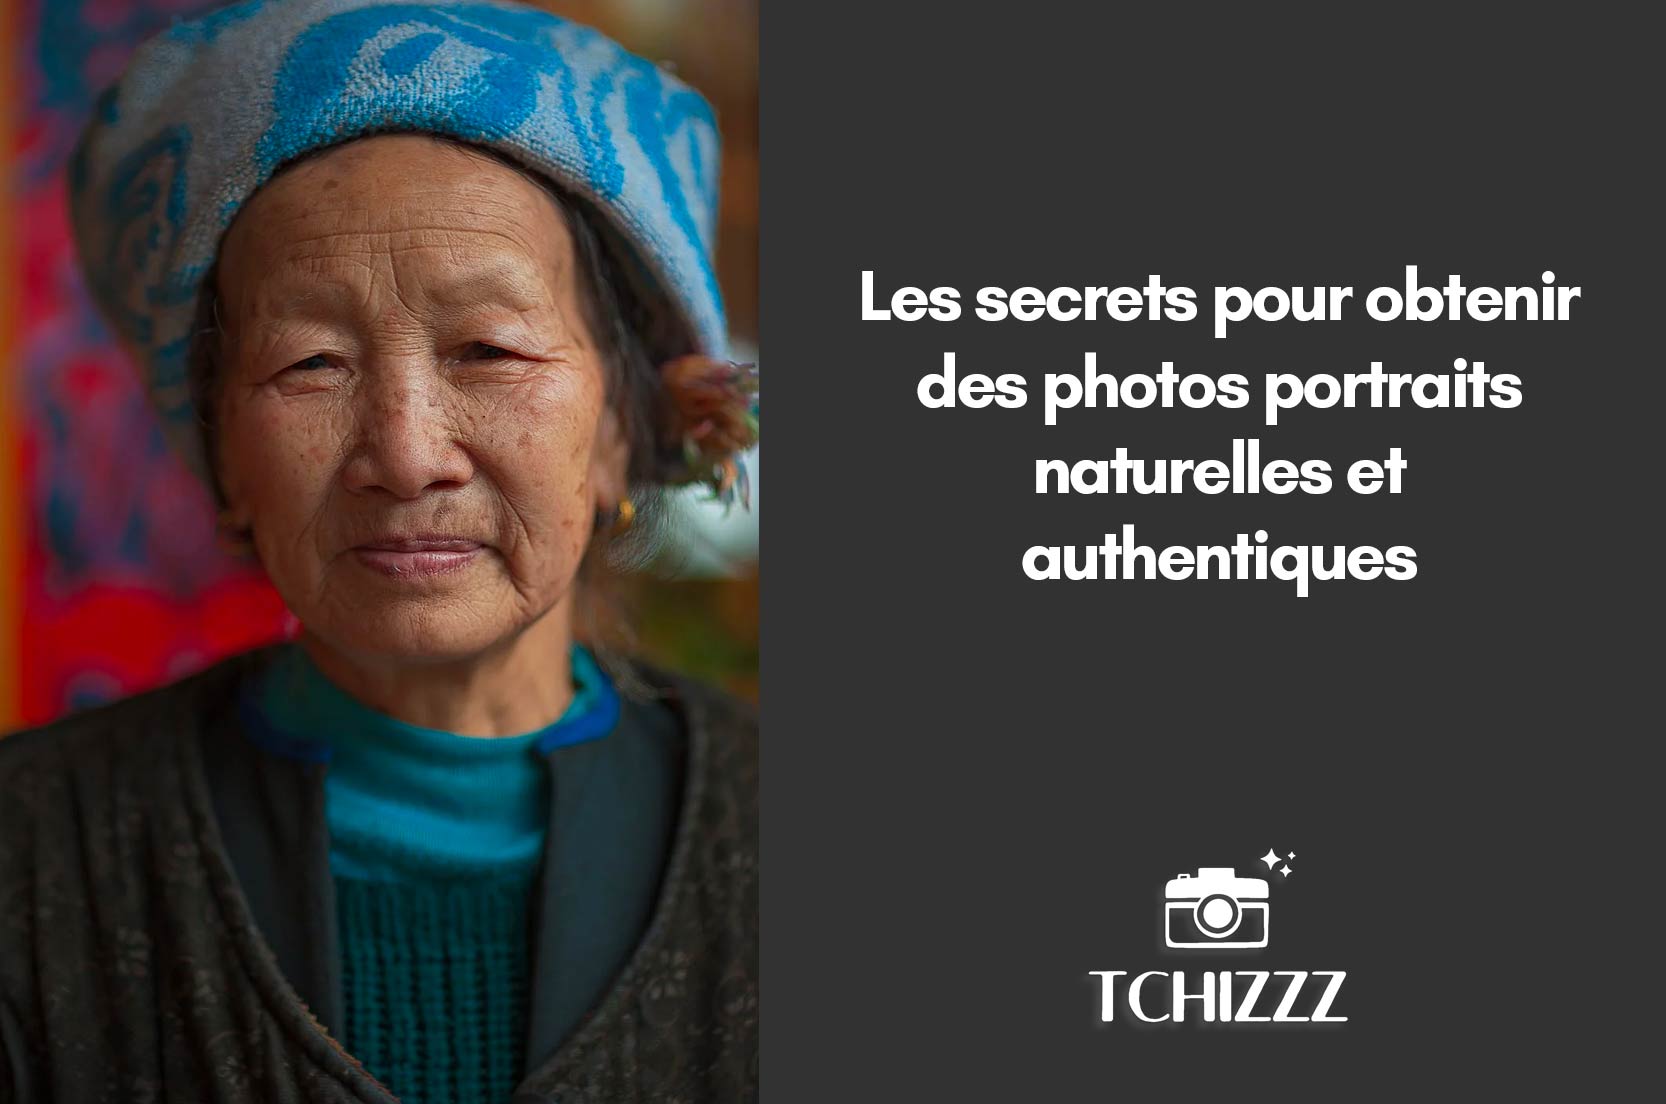 You are currently viewing Les secrets pour obtenir des portraits naturels et authentiques